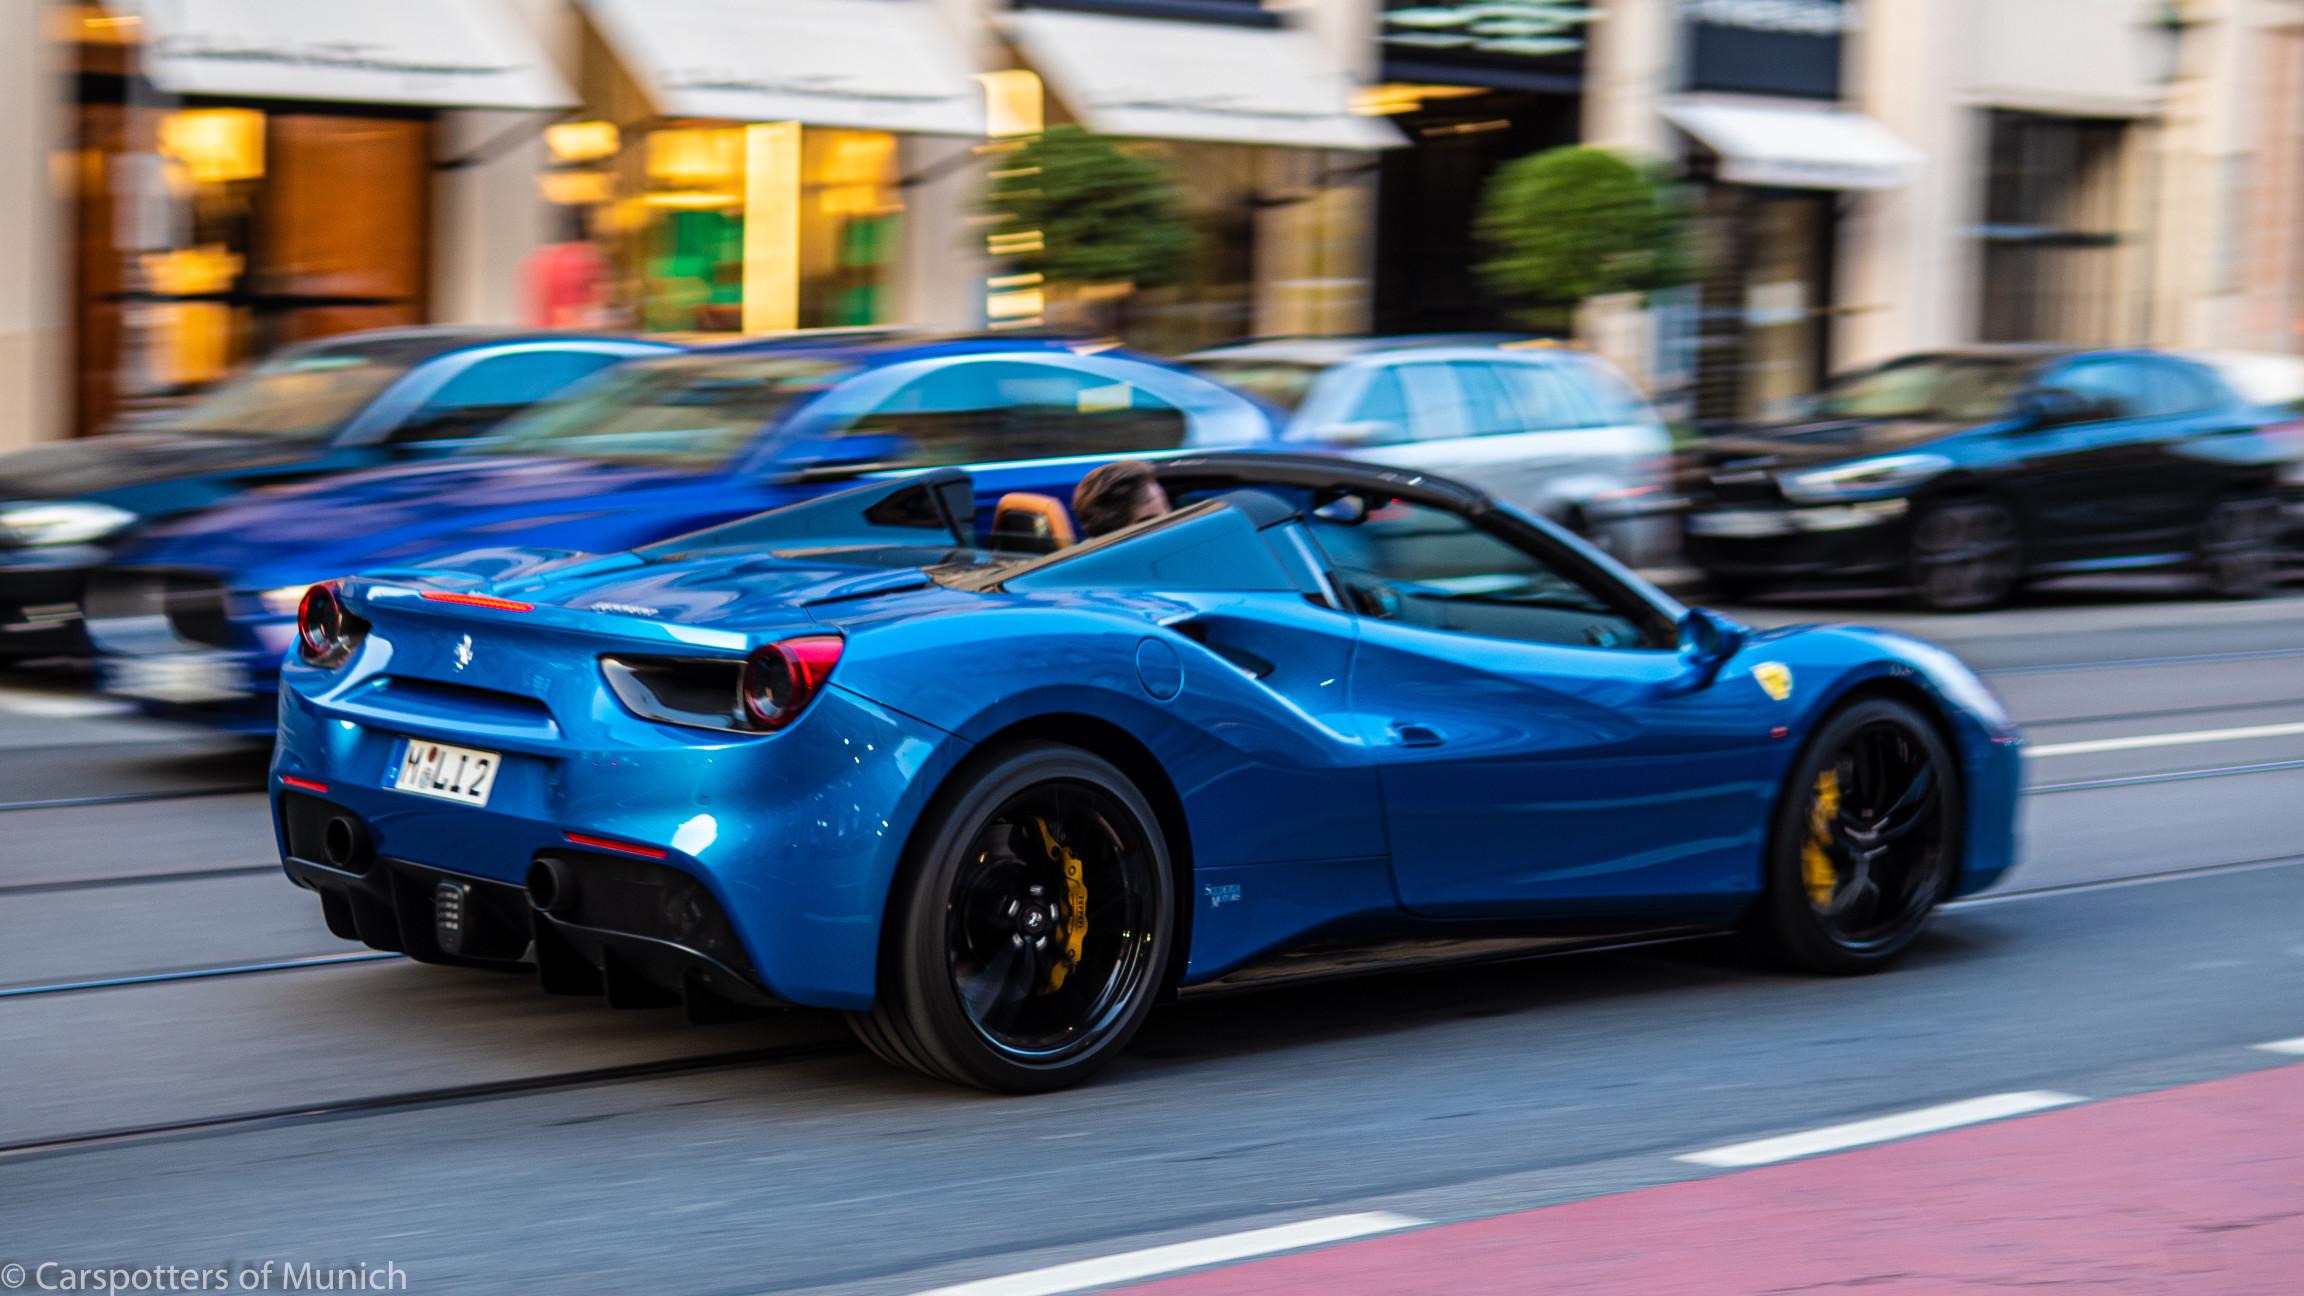 A blue Ferrari 488 Pista driving on a city street